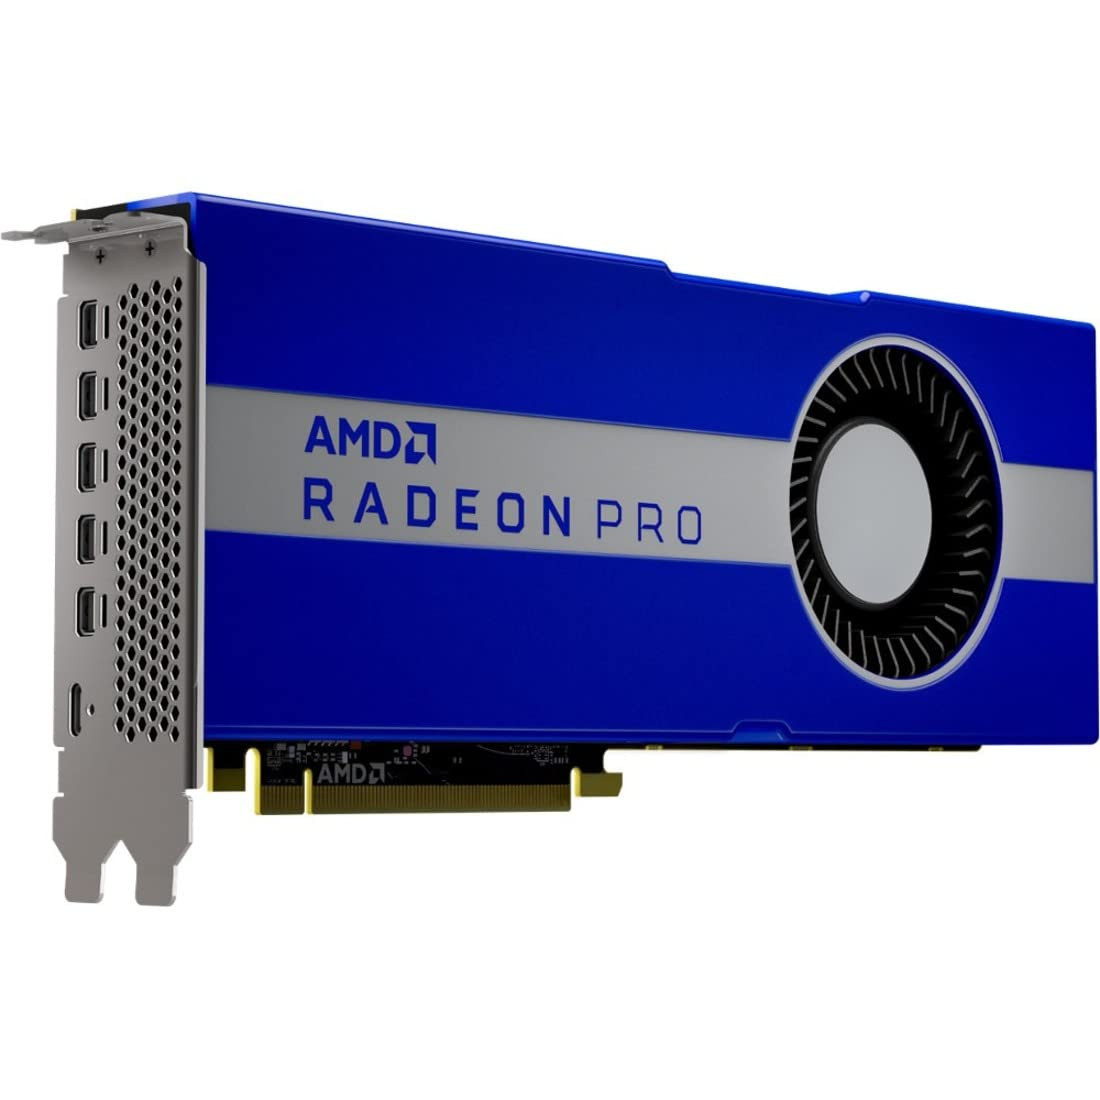  AMD Radeon Pro W5700 8 GB (100-506085) - зображення 1